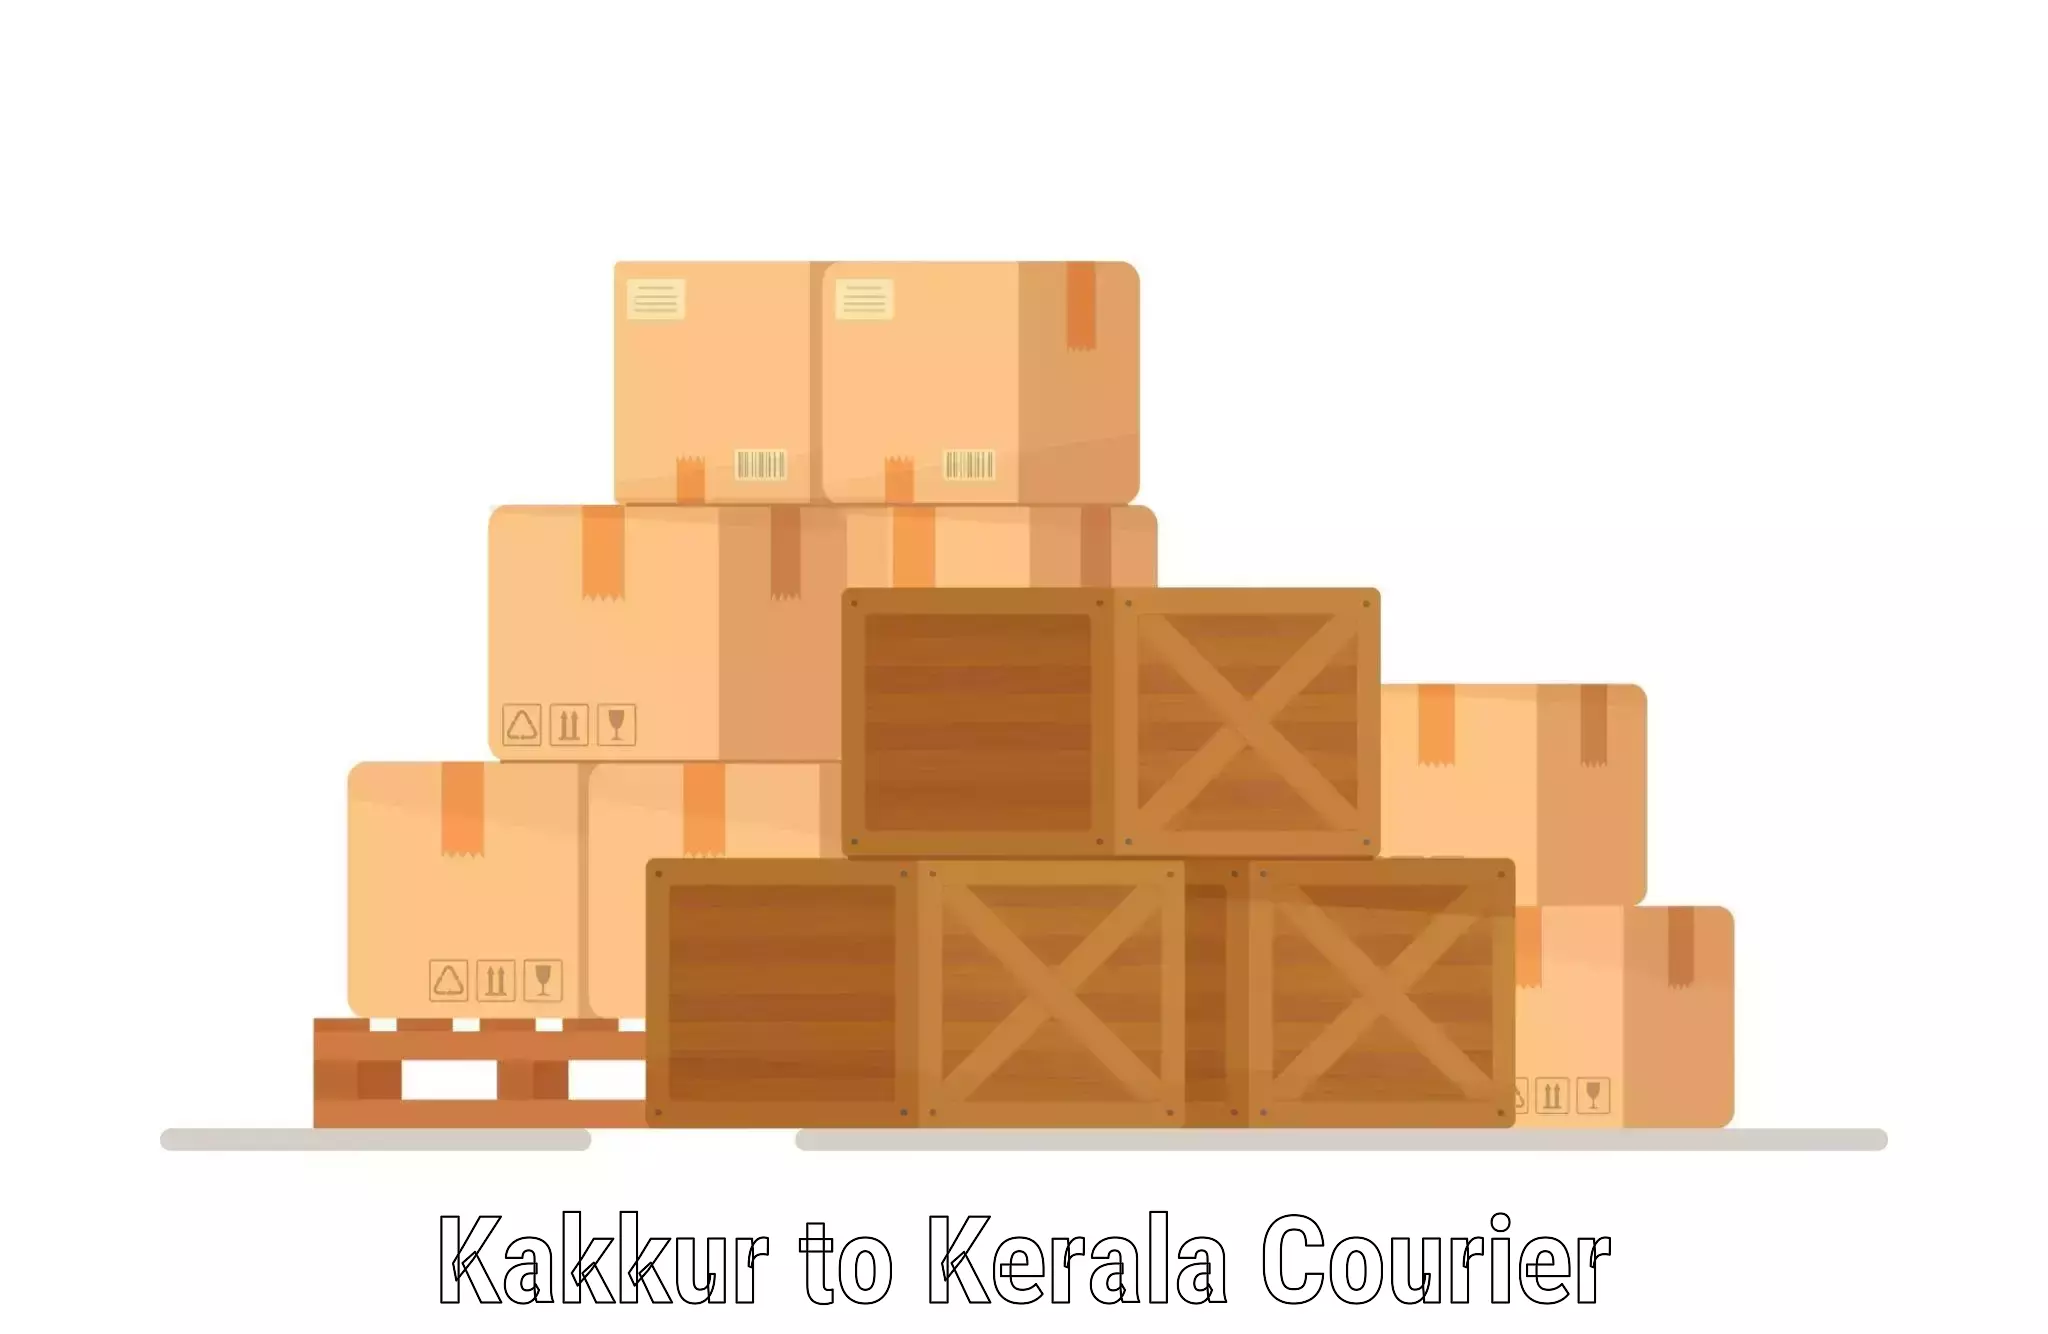 Optimized delivery routes Kakkur to Chungathara